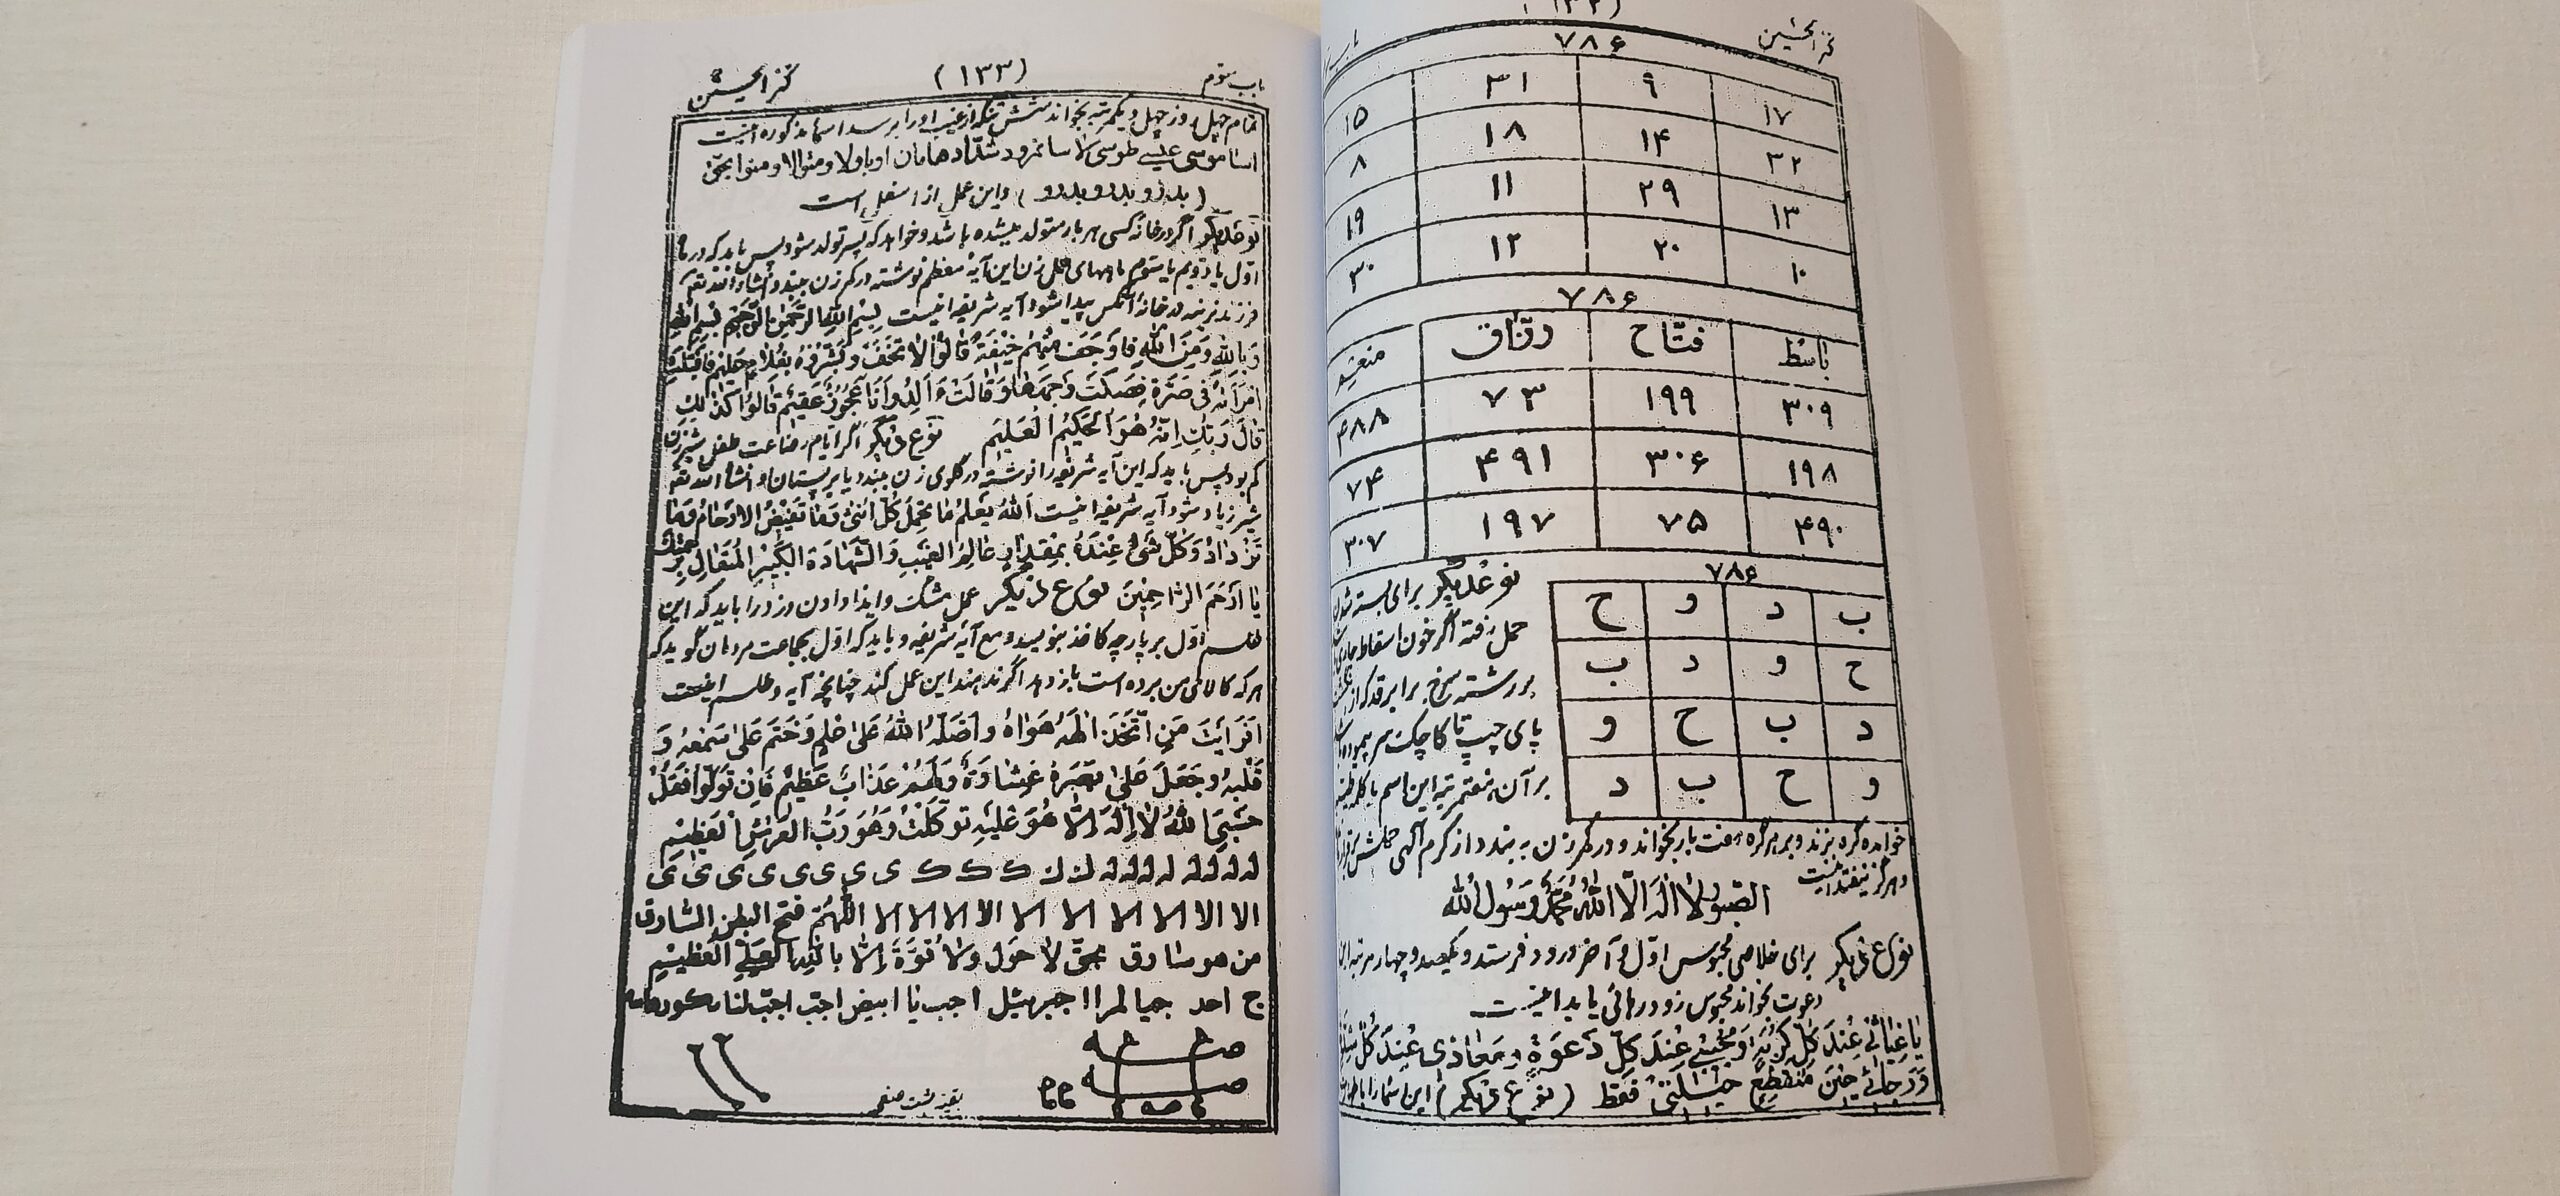 طلسمات در کتاب علوم غریبه کنزالحسینی فارسی